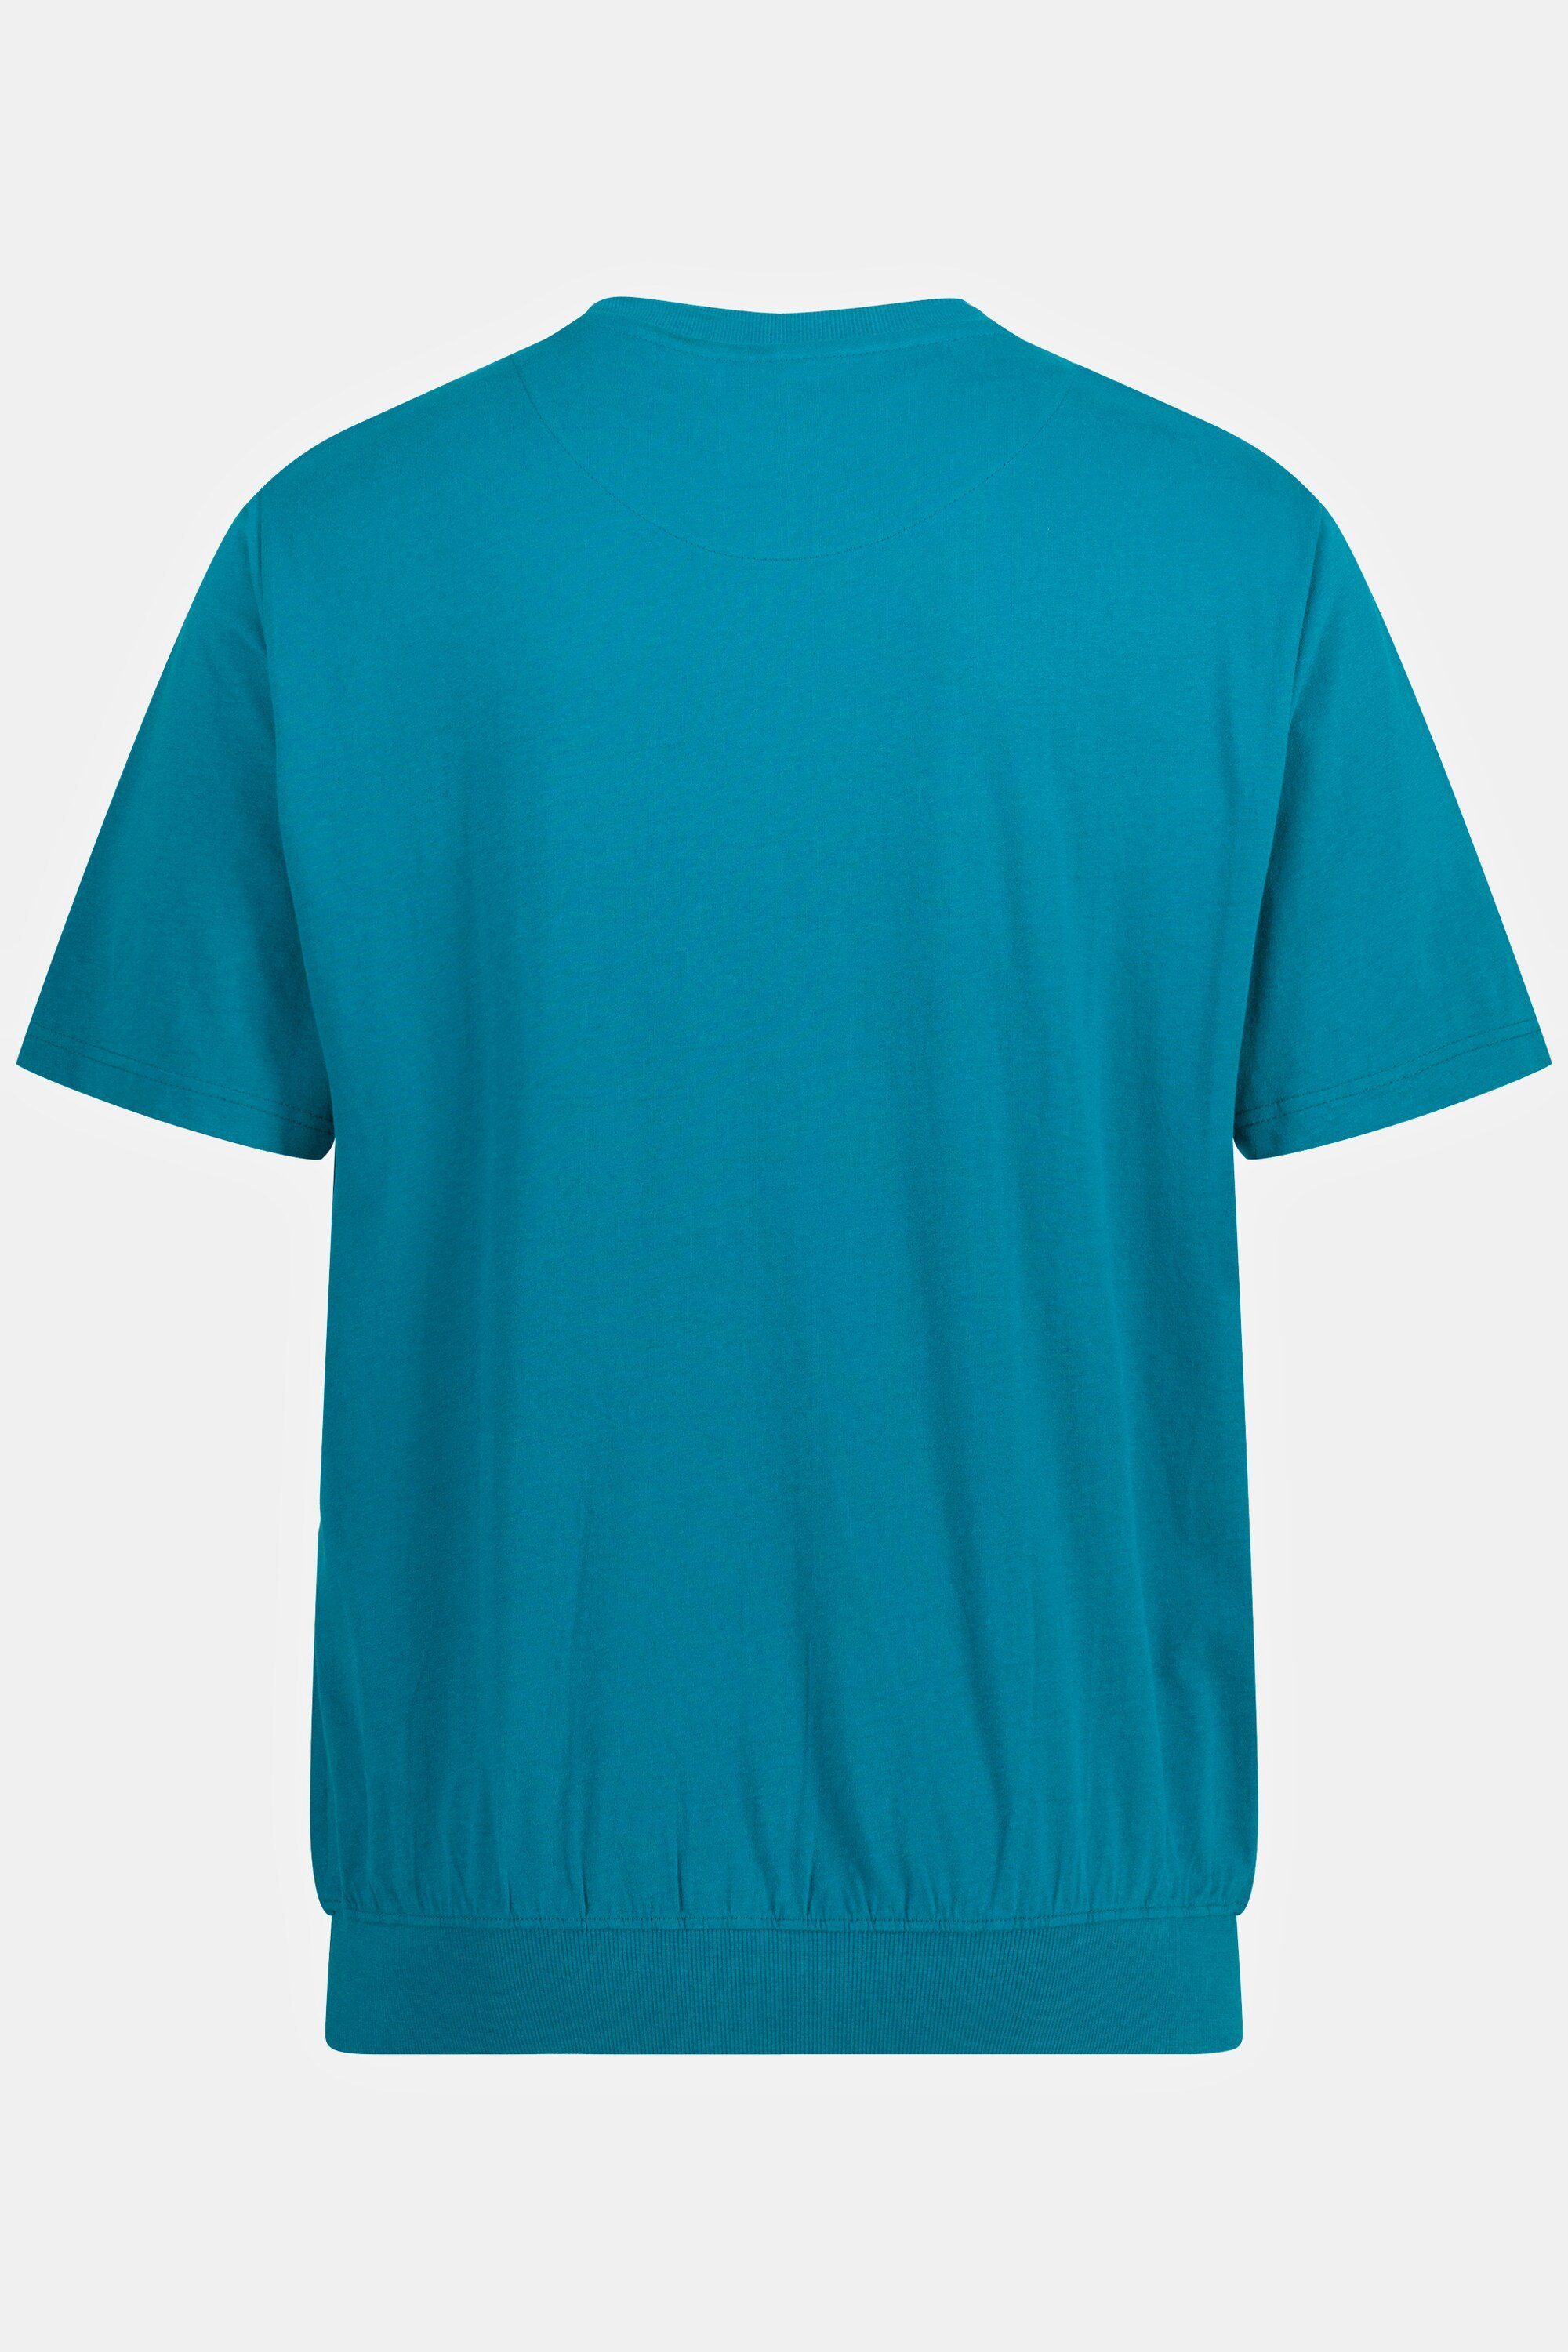 ozeanblau Bauchfit T-Shirt Halbarm Basic JP1880 10XL T-Shirt XXL bis